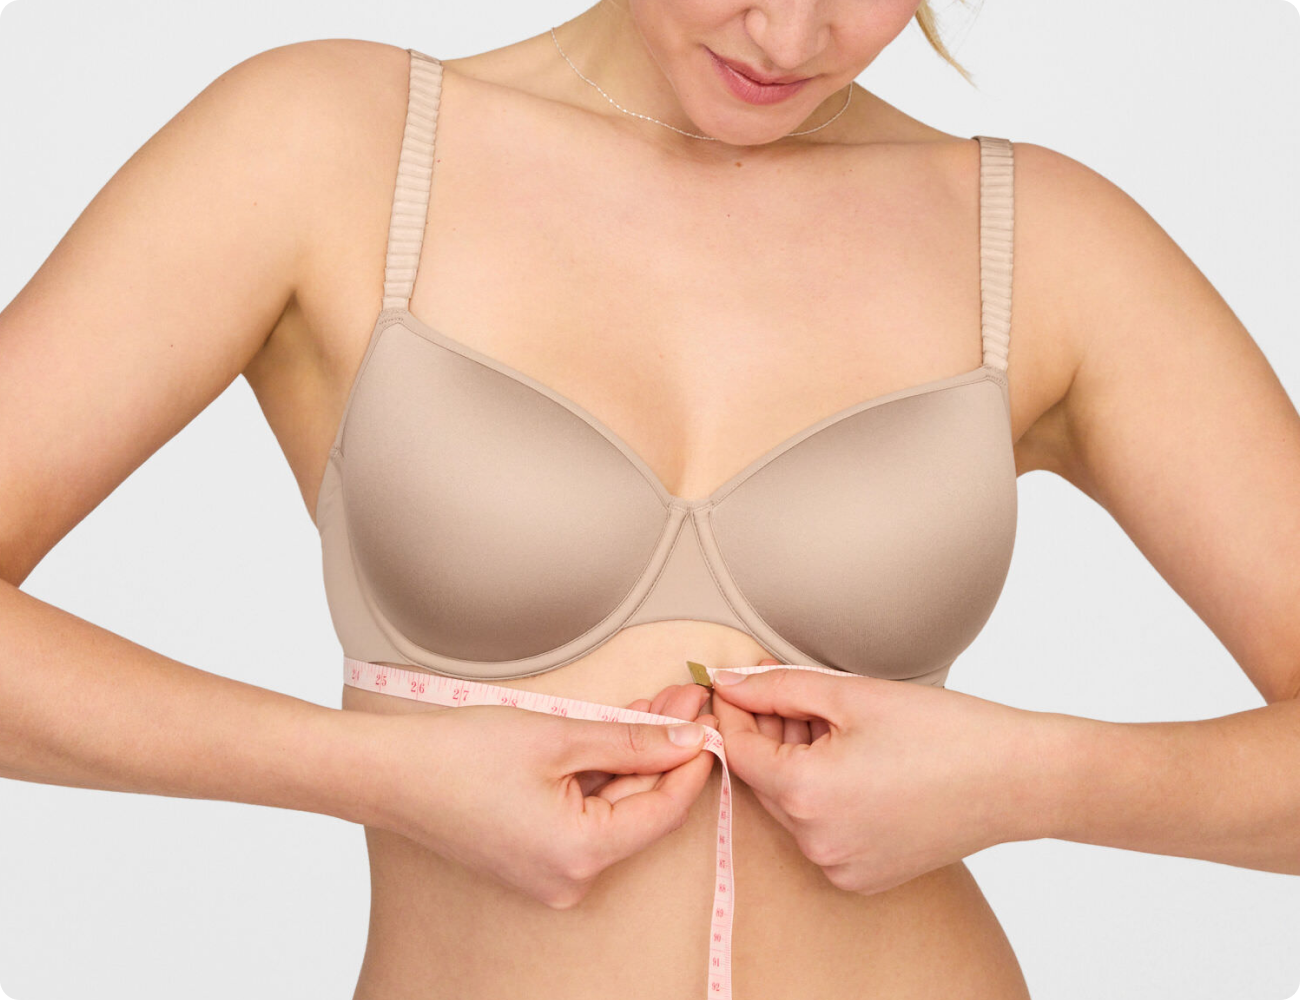 Most women wear wrong bra size